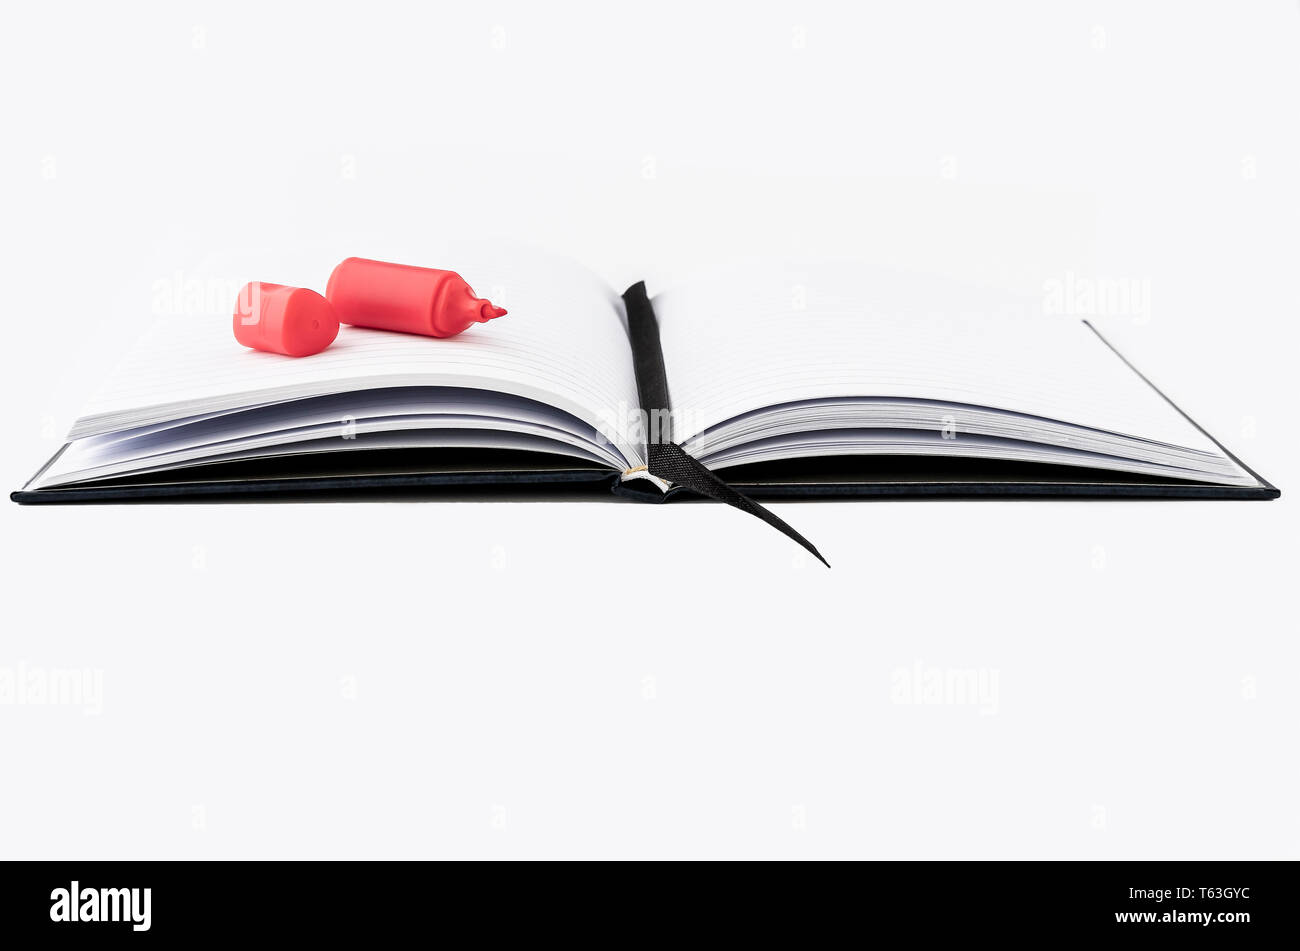 Tomar notas, una página aislada del libro con una pluma de resaltado en rojo sobre fondo blanco. Foto de stock